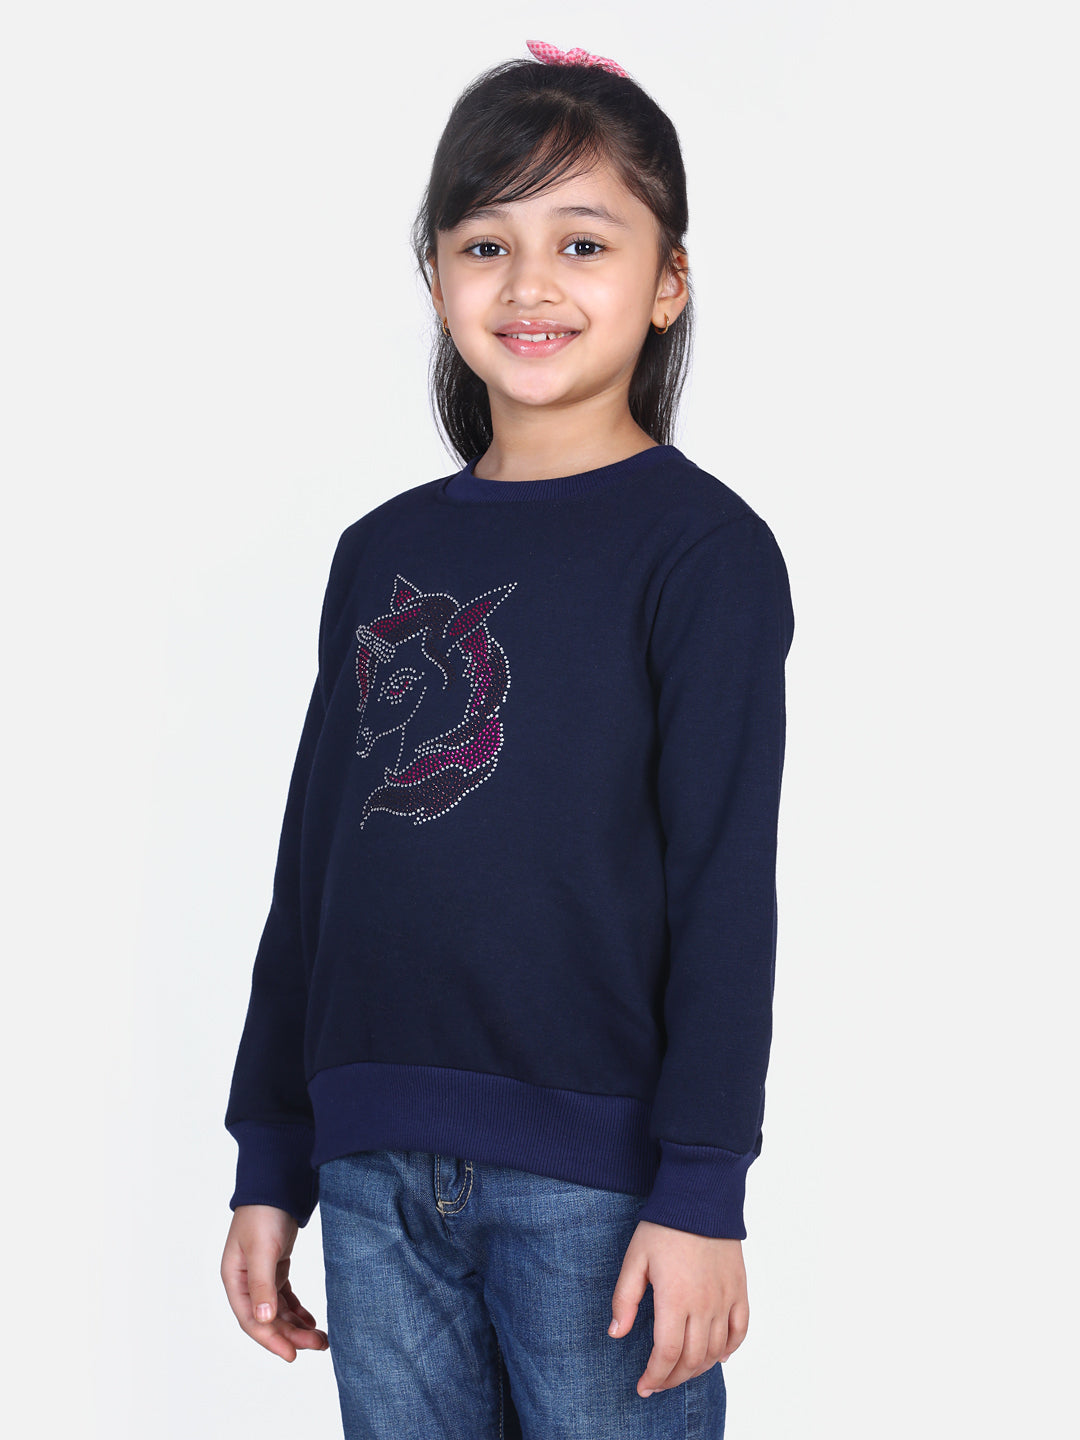 Girls Navy Crystal Unicorn embellished Winter sweatshirt